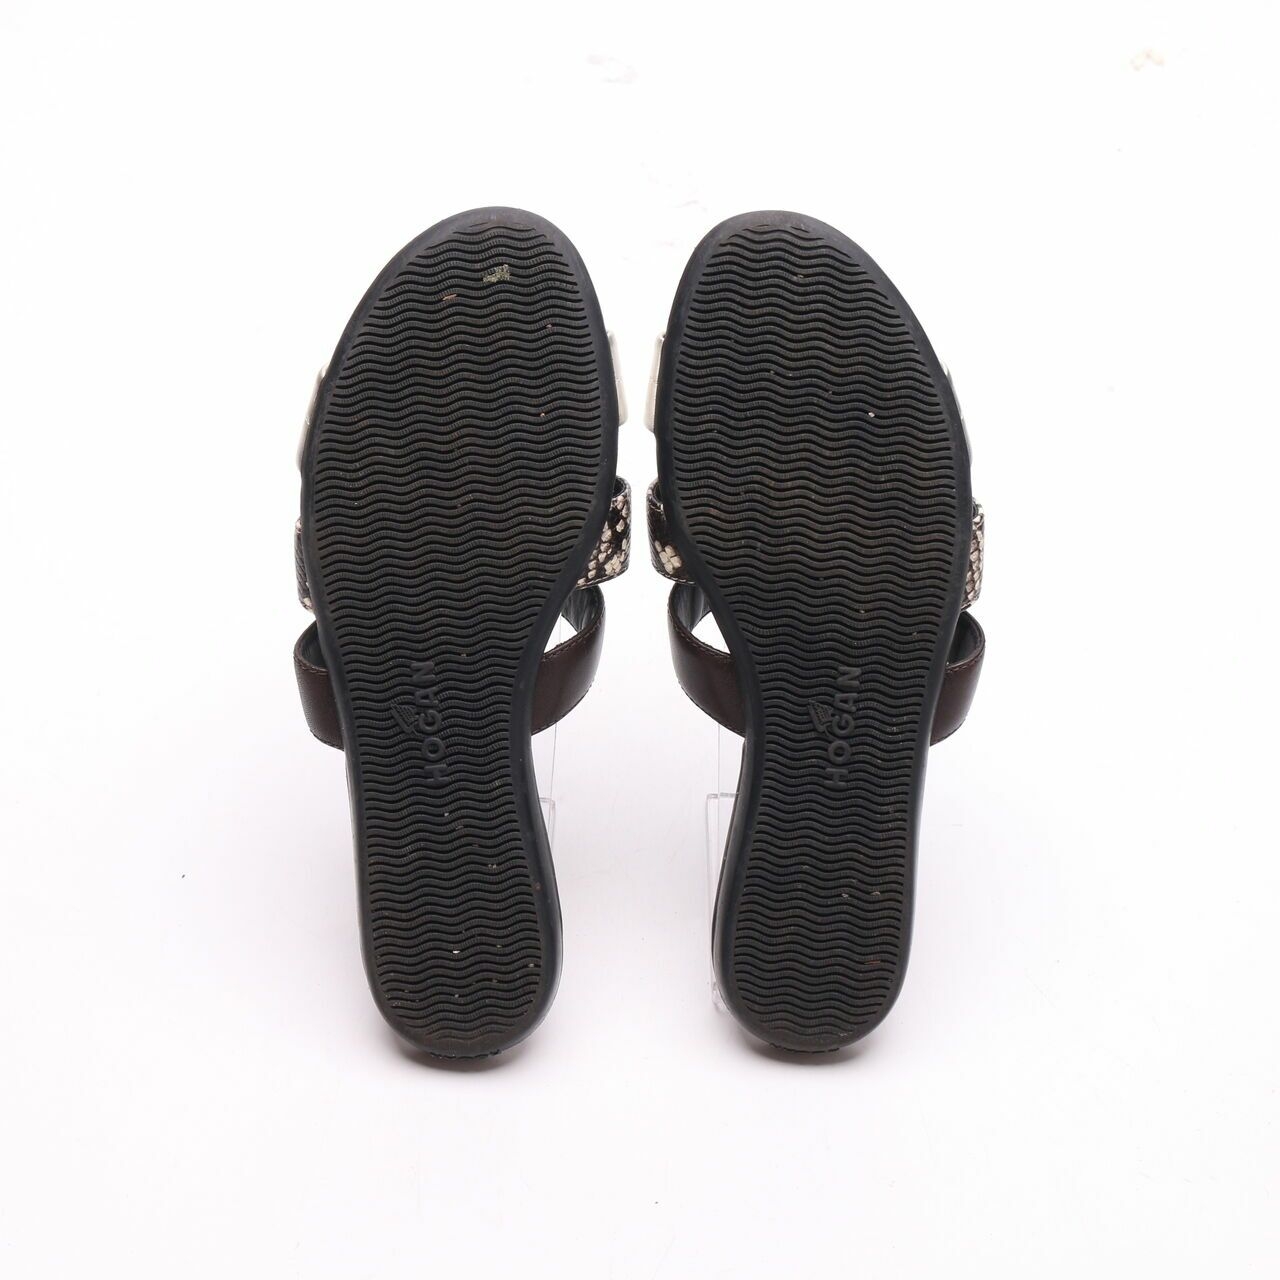 Hogan Black Sandals